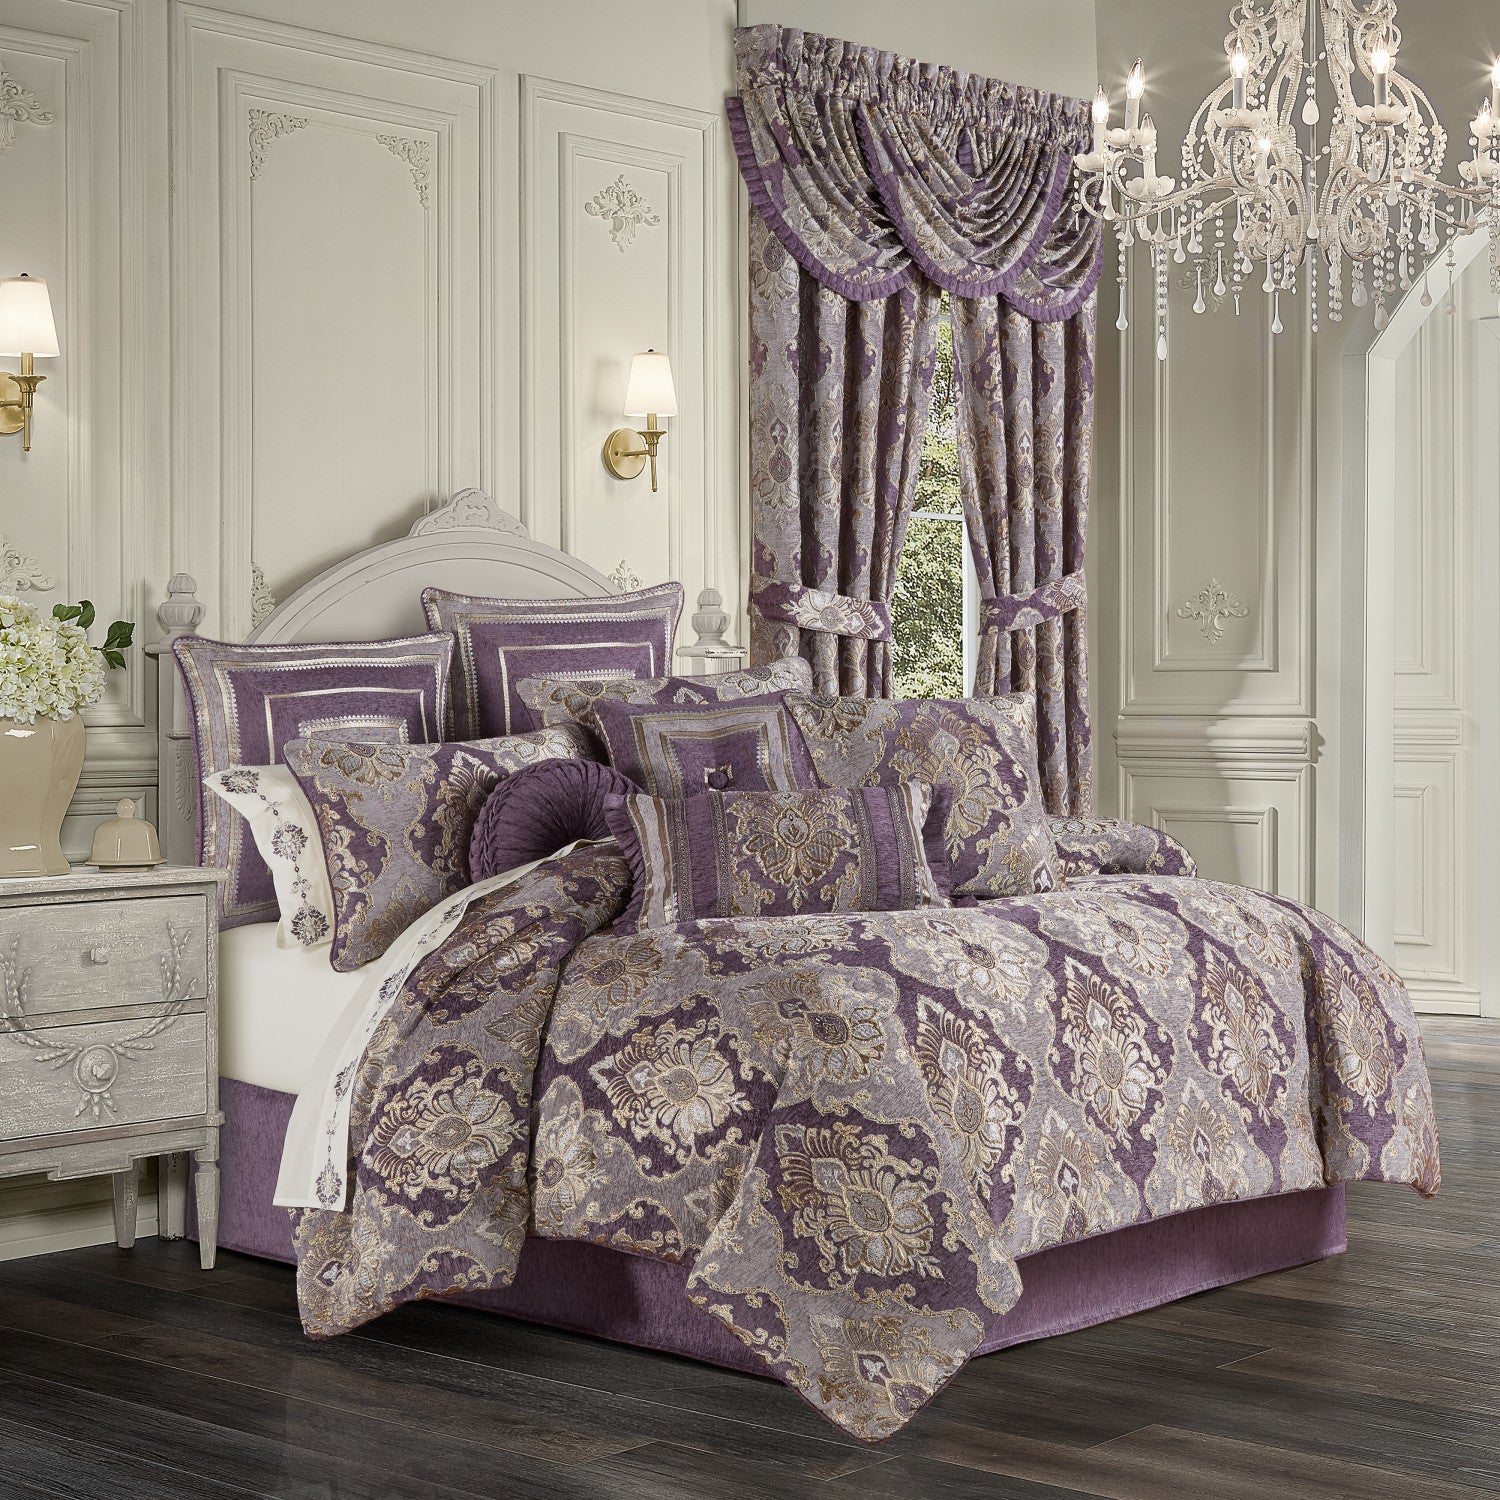 Five Queens Court Dominique 4 Piece Comforter Set, King - Lavender